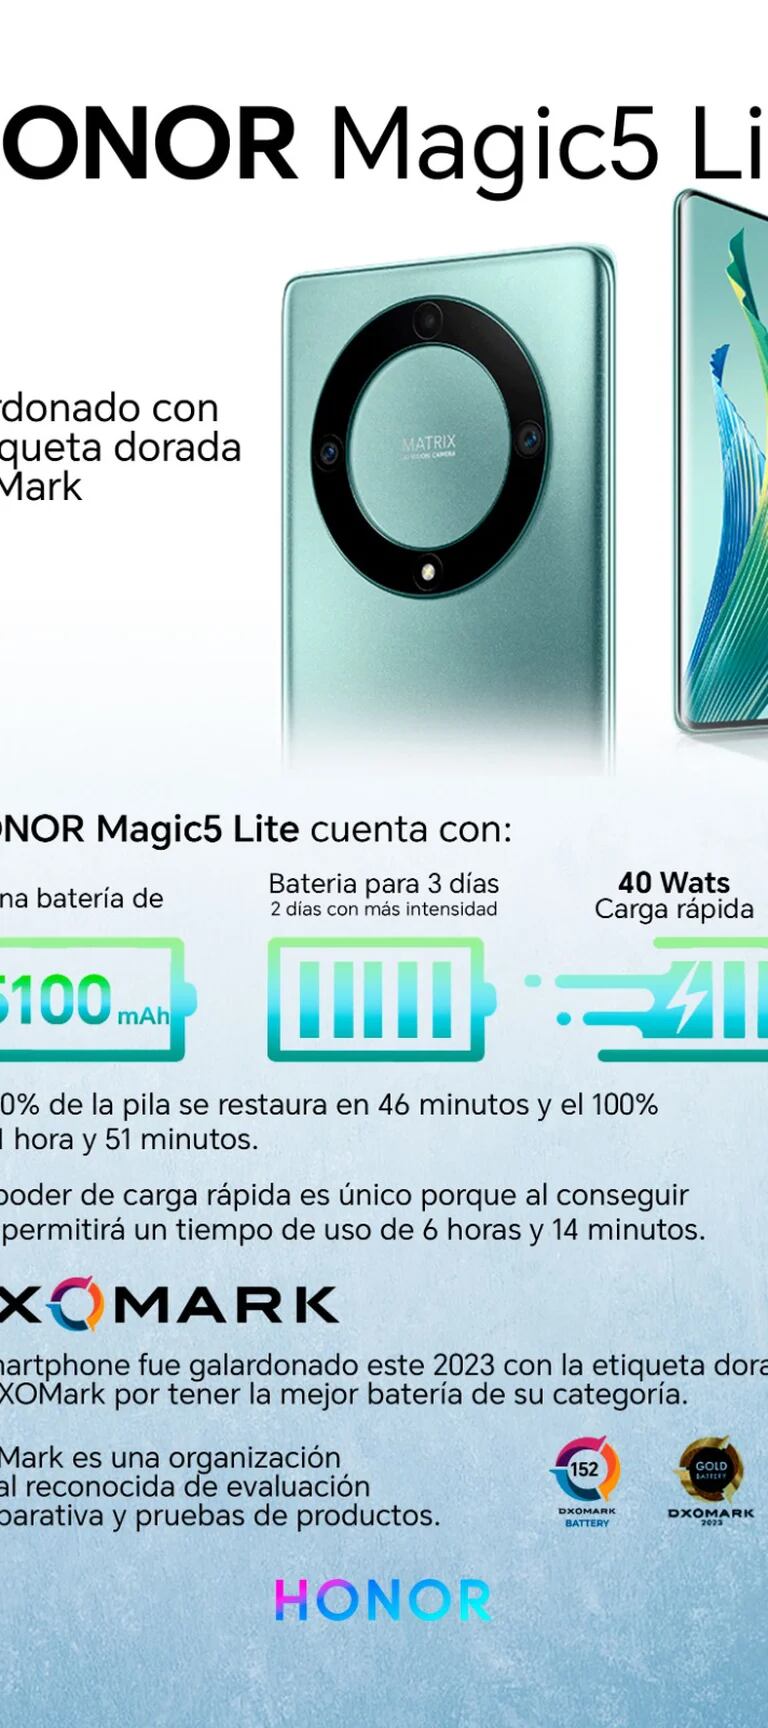 HONOR Magic5 Lite, el celular con una batería de 3 días, fue galardonado  con la etiqueta dorada DXOMark - Infobae